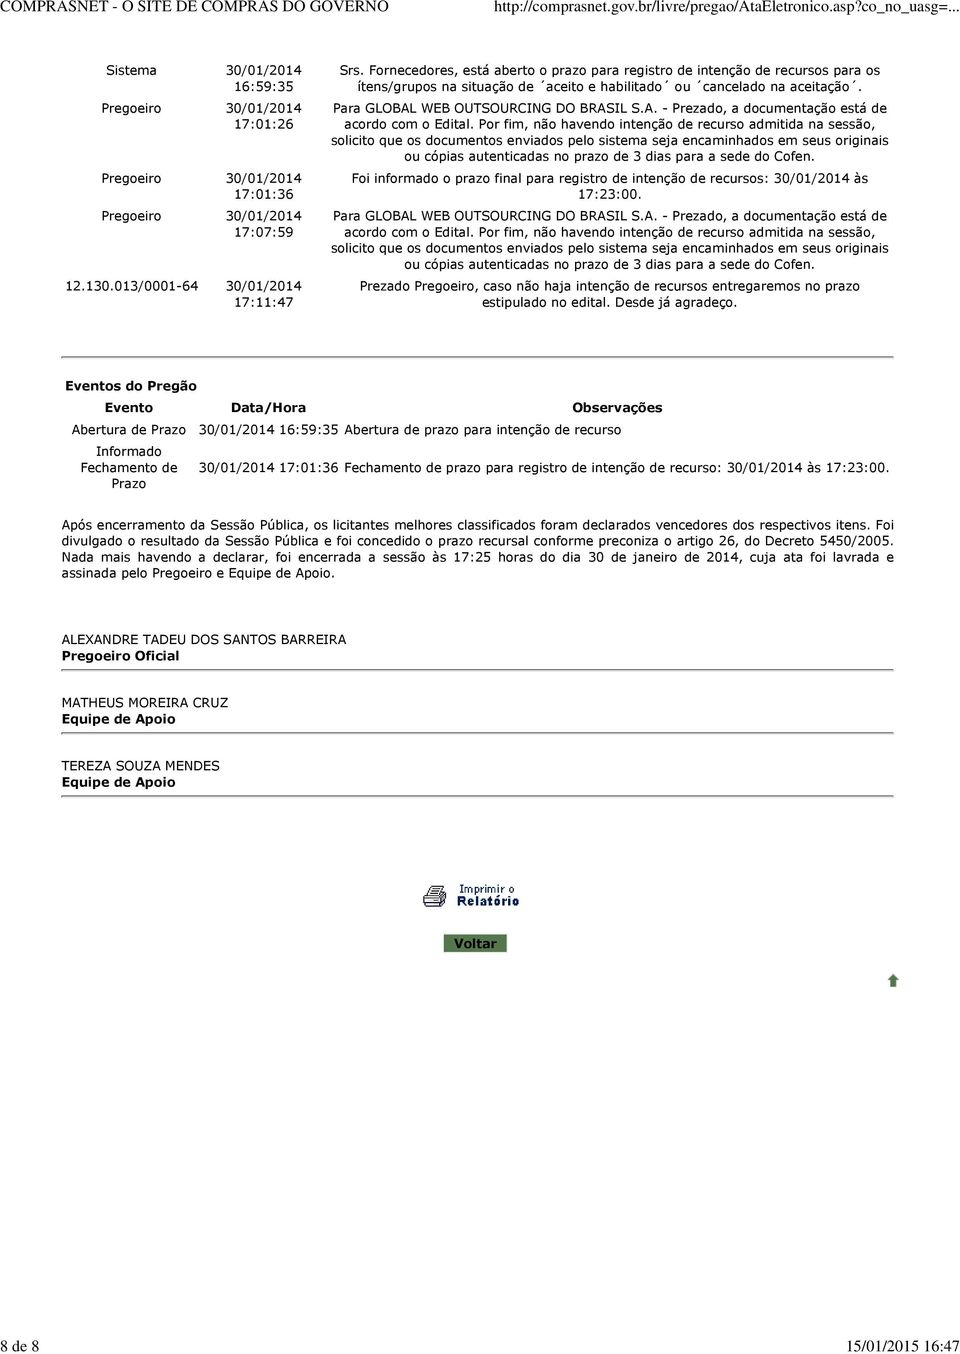 WEB OUTSOURCING DO BRASIL S.A. - Prezado, a documentação está de acordo com o Edital.